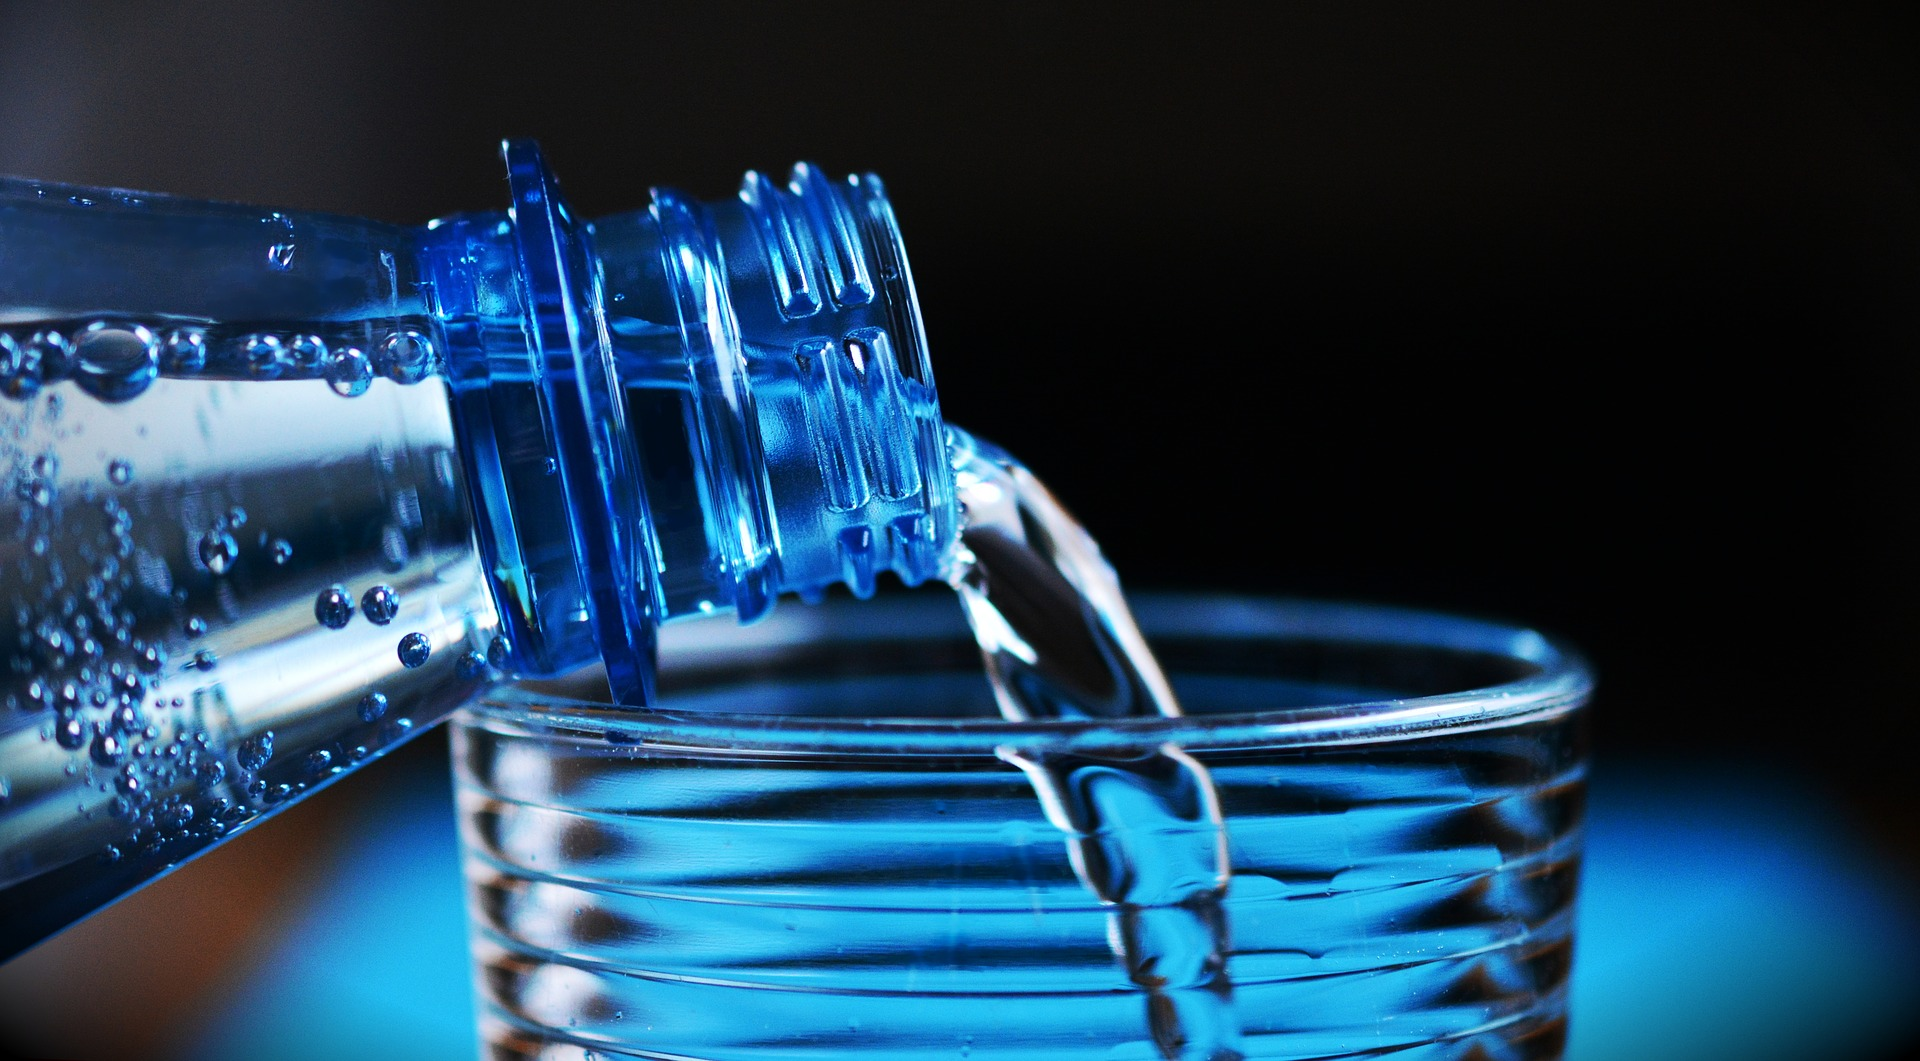 https://pixabay.com/de/photos/flasche-mineralwasser-glas-gie%c3%9fen-2032980/